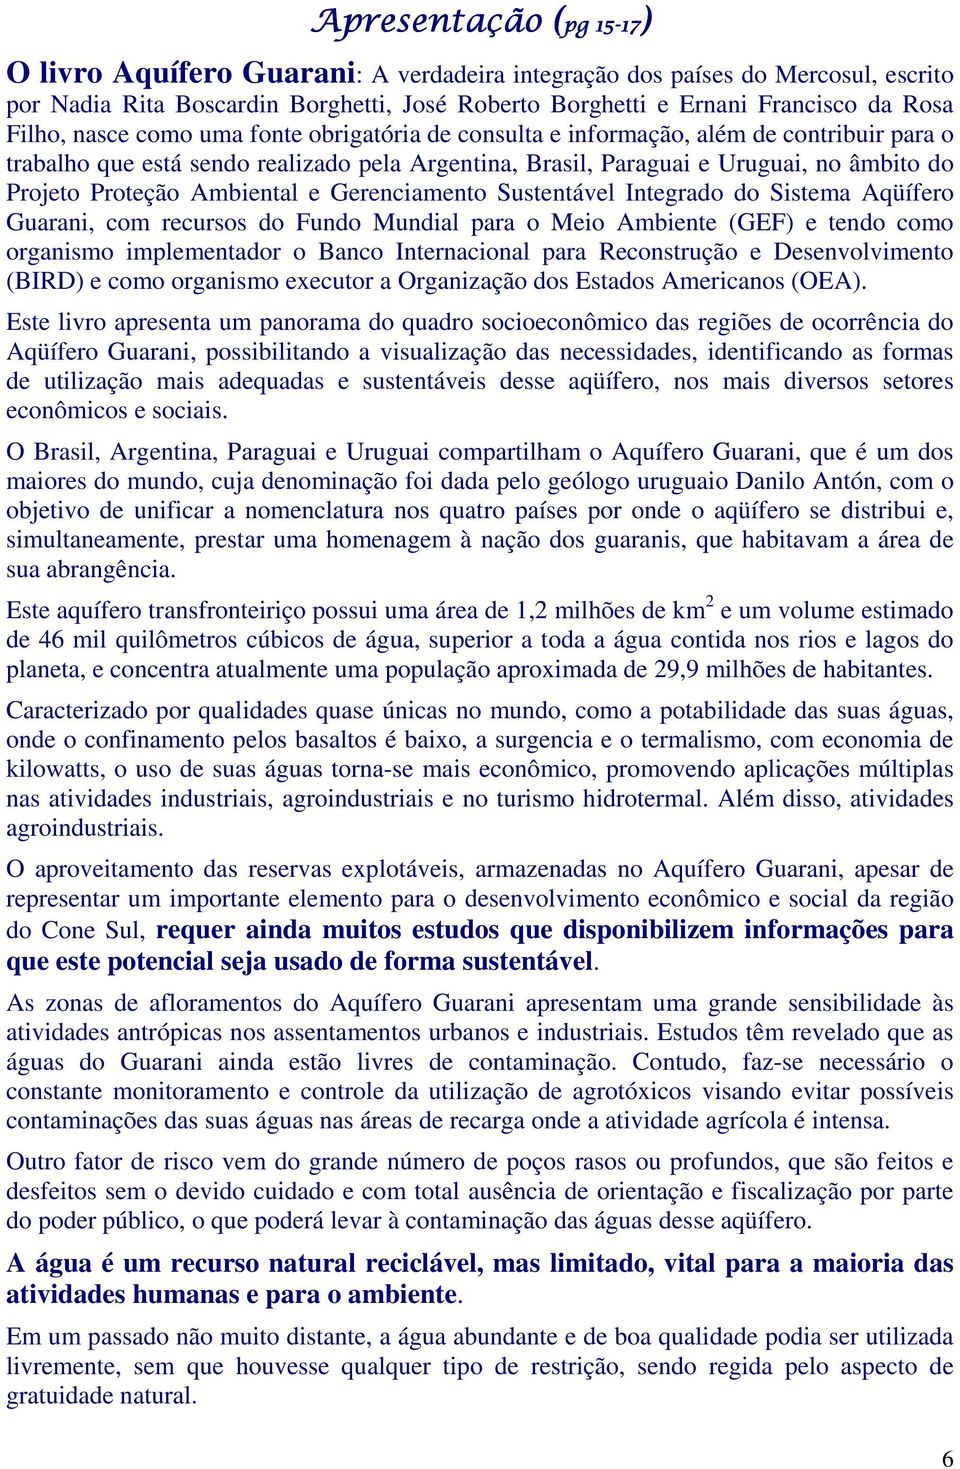 Proteção Ambiental e Gerenciamento Sustentável Integrado do Sistema Aqüífero Guarani, com recursos do Fundo Mundial para o Meio Ambiente (GEF) e tendo como organismo implementador o Banco